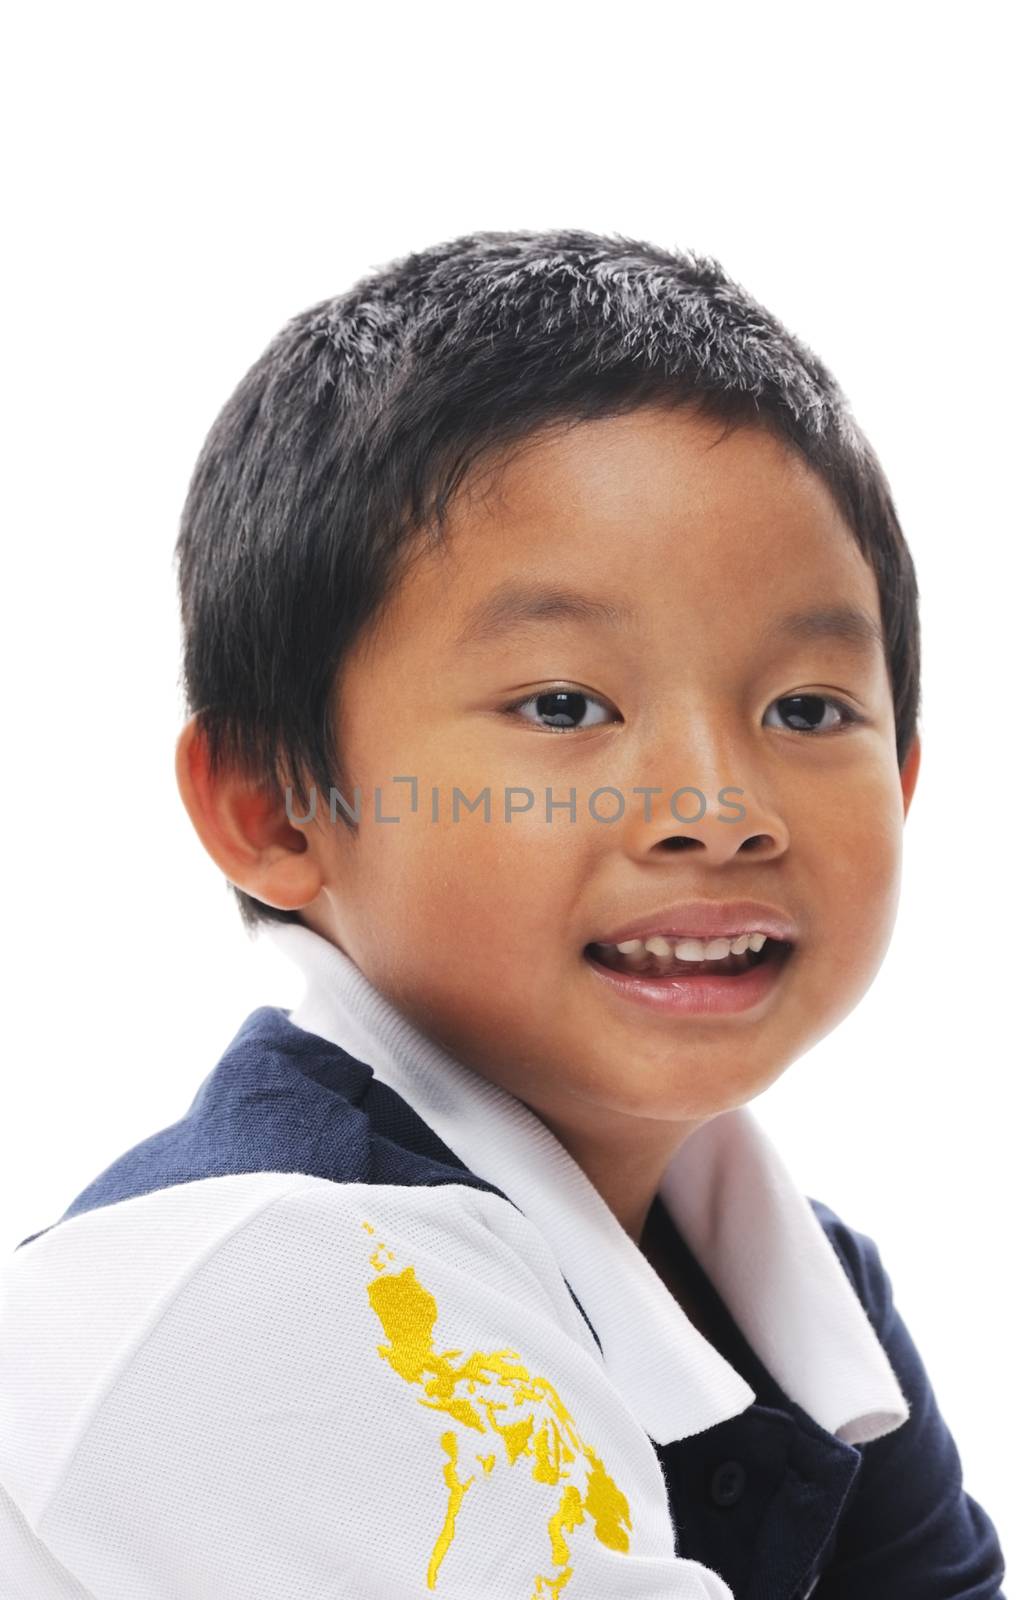 Filipino boy by kmwphotography